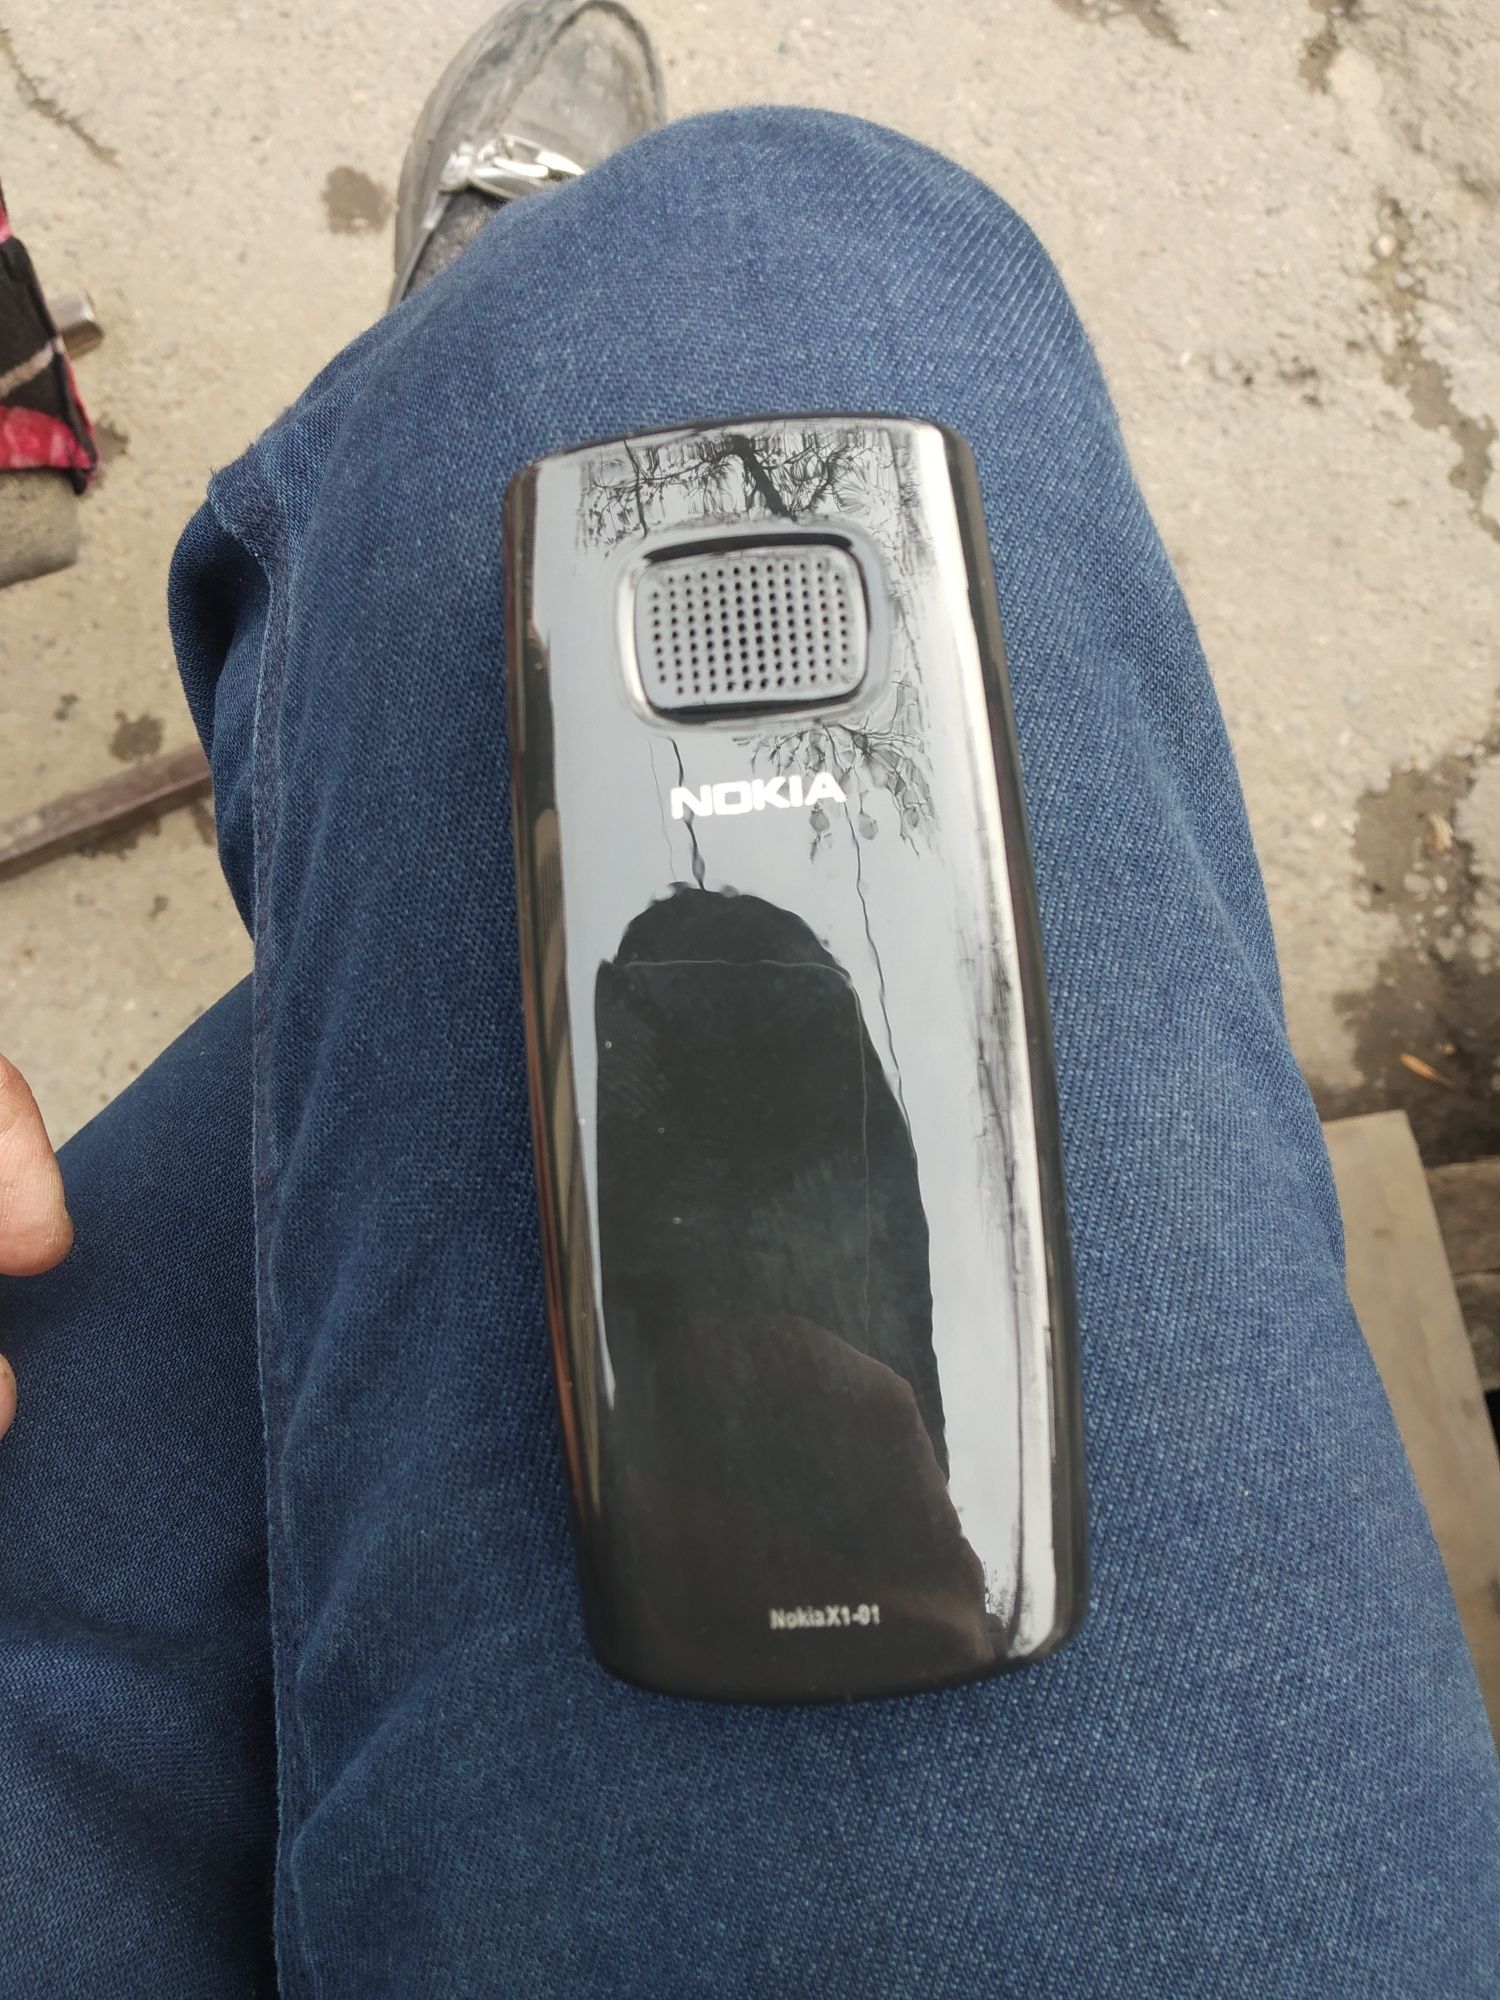 N-mobil Nokia X1-01 sastayanasi yahshi